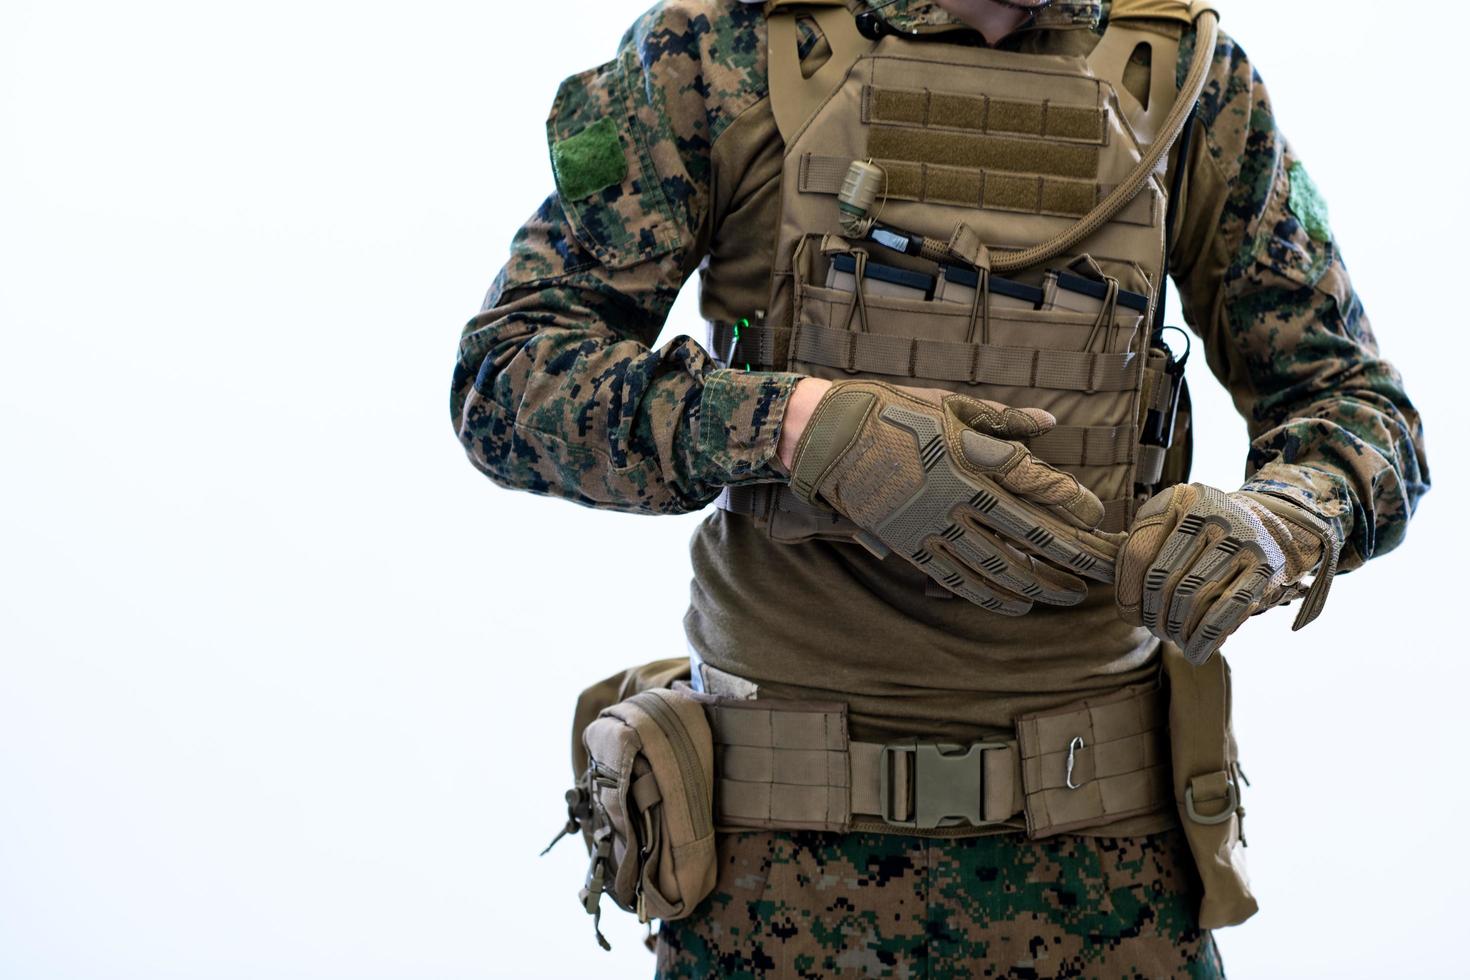 gros plan sur les mains d'un soldat mettant des gants de combat protecteurs photo